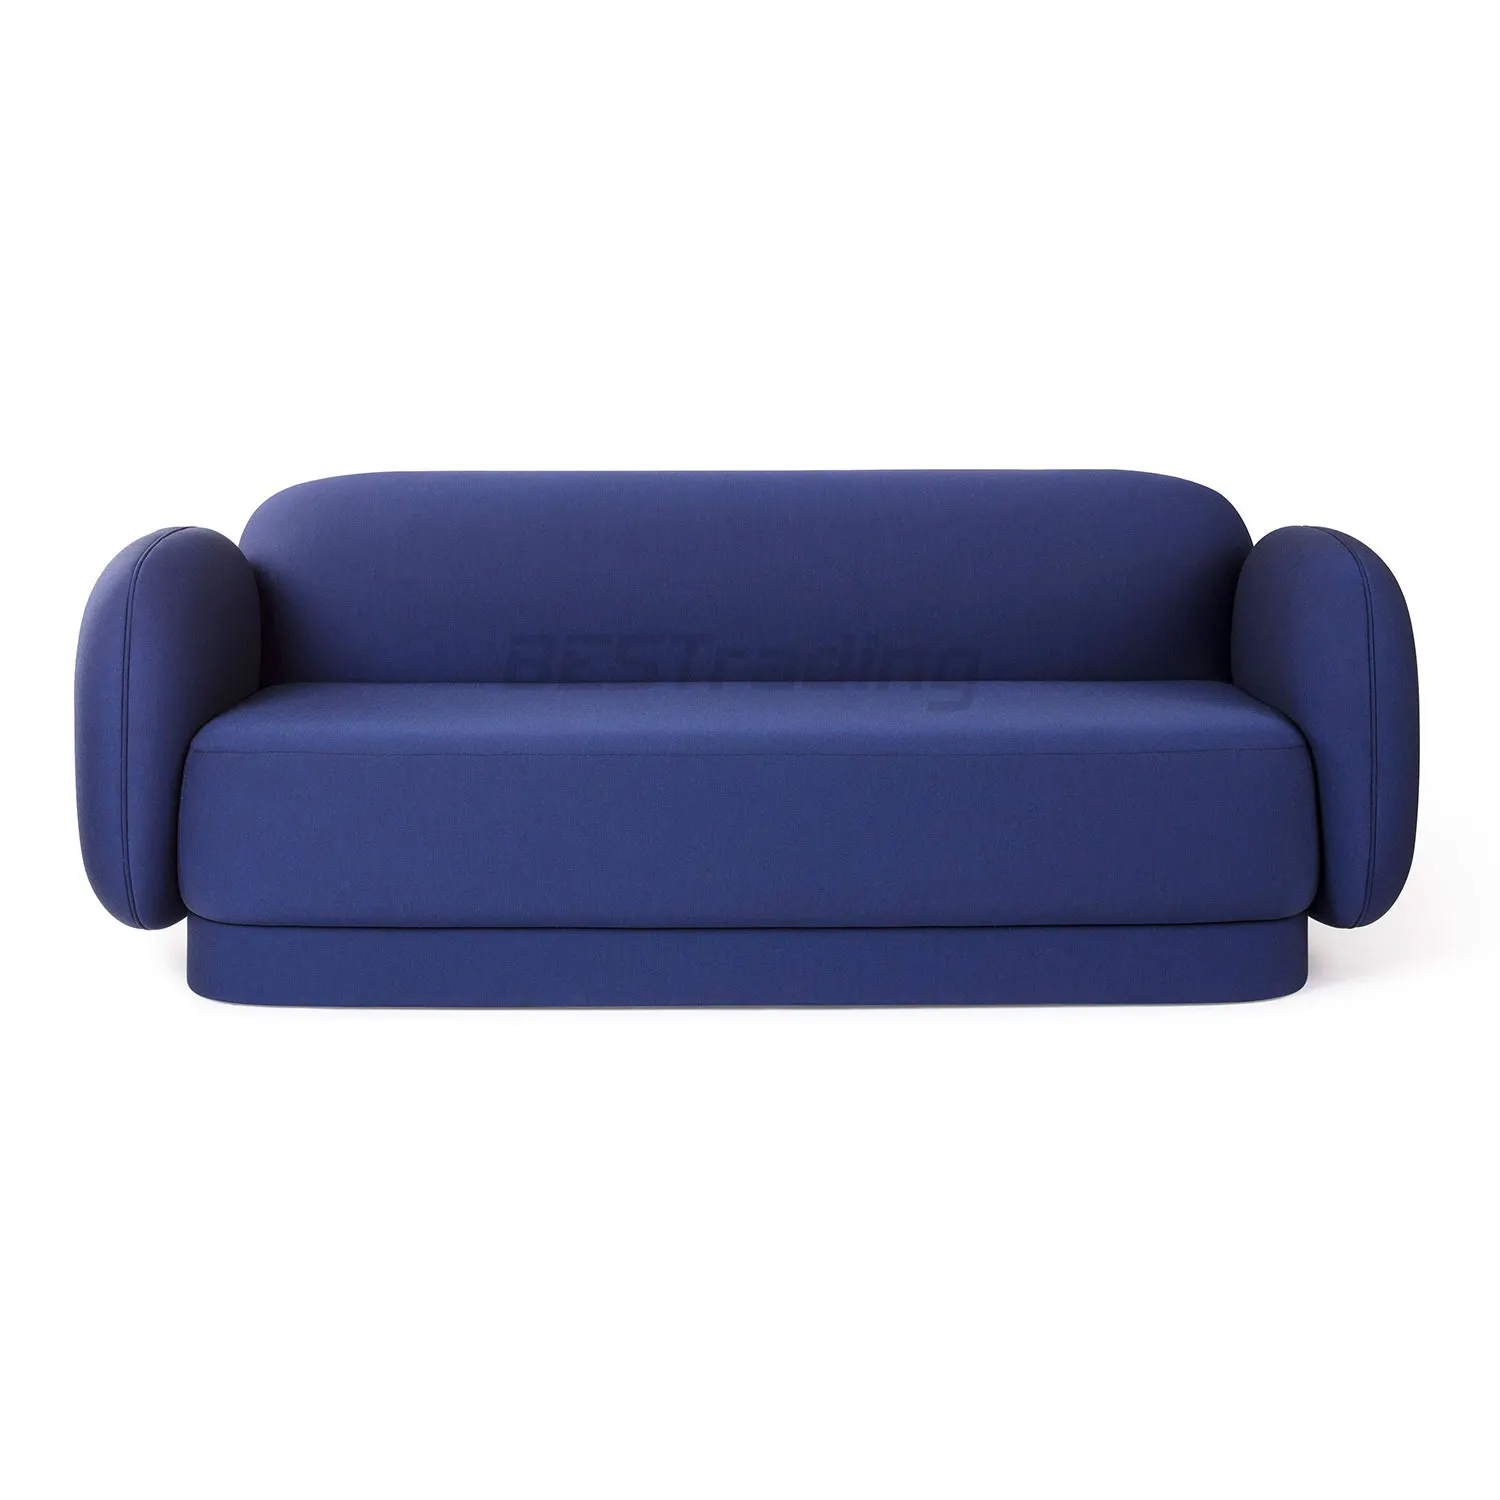 Nuovo divano moderno in stile italiano di lusso leggero design semplice di lusso divano set mobili soggiorno